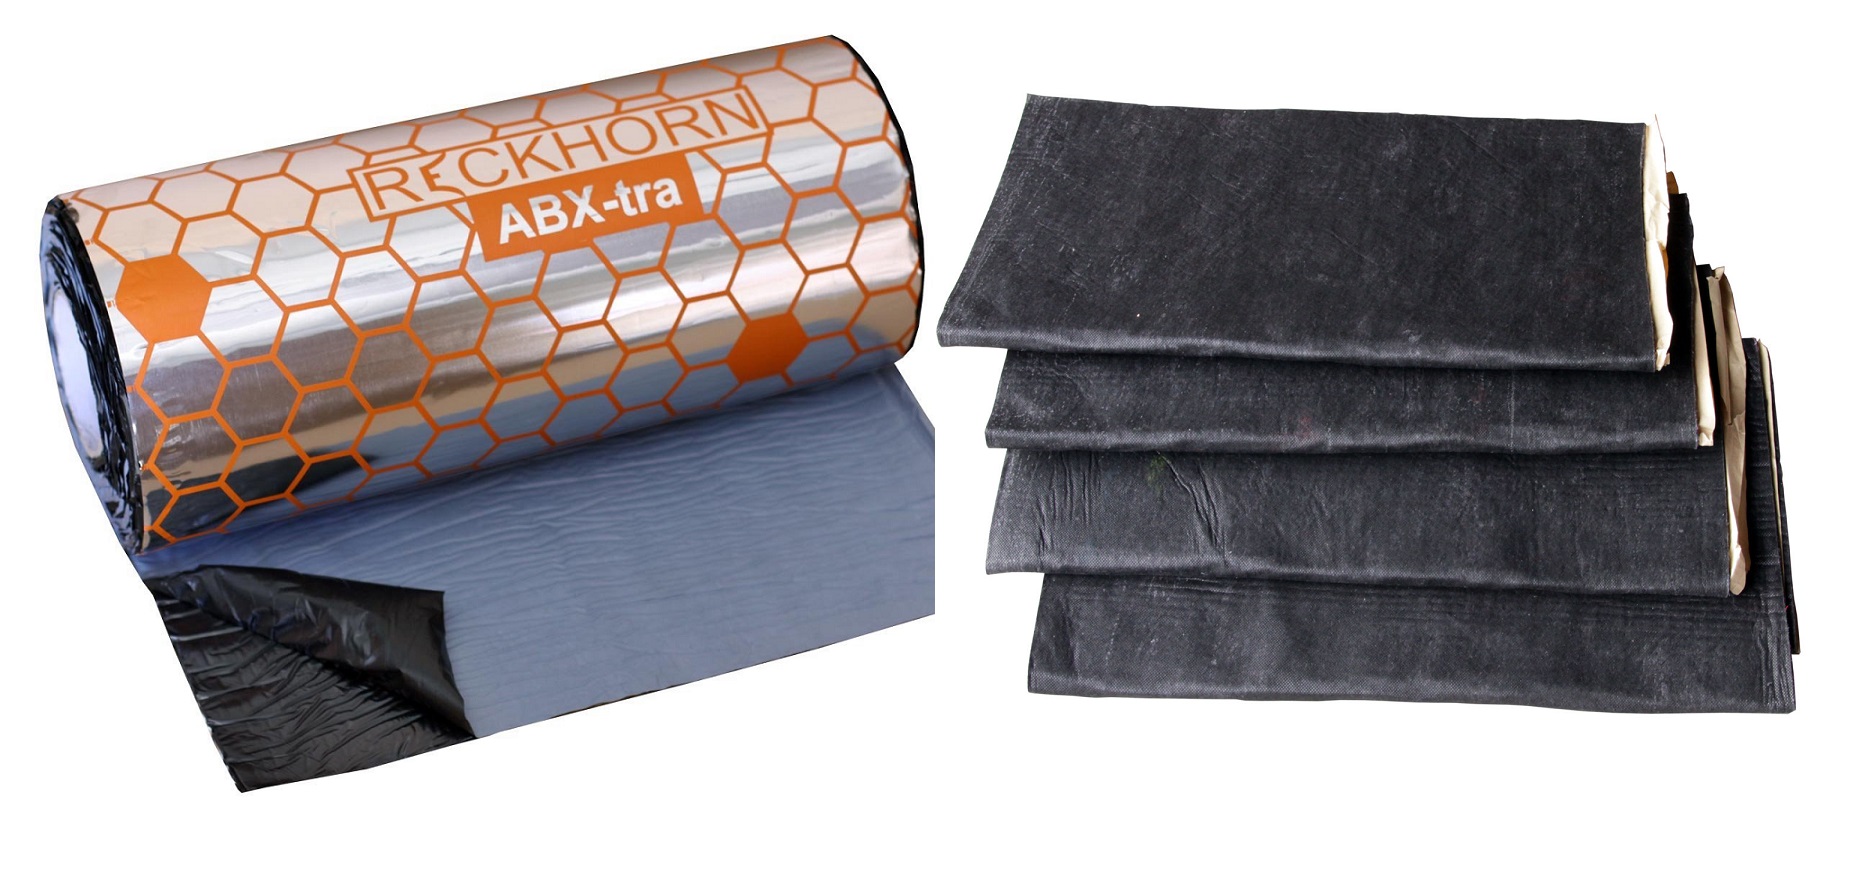 1 x ABX-tra 2,5 mm Alubutyl und 1 x DV-10 Dämmvlies